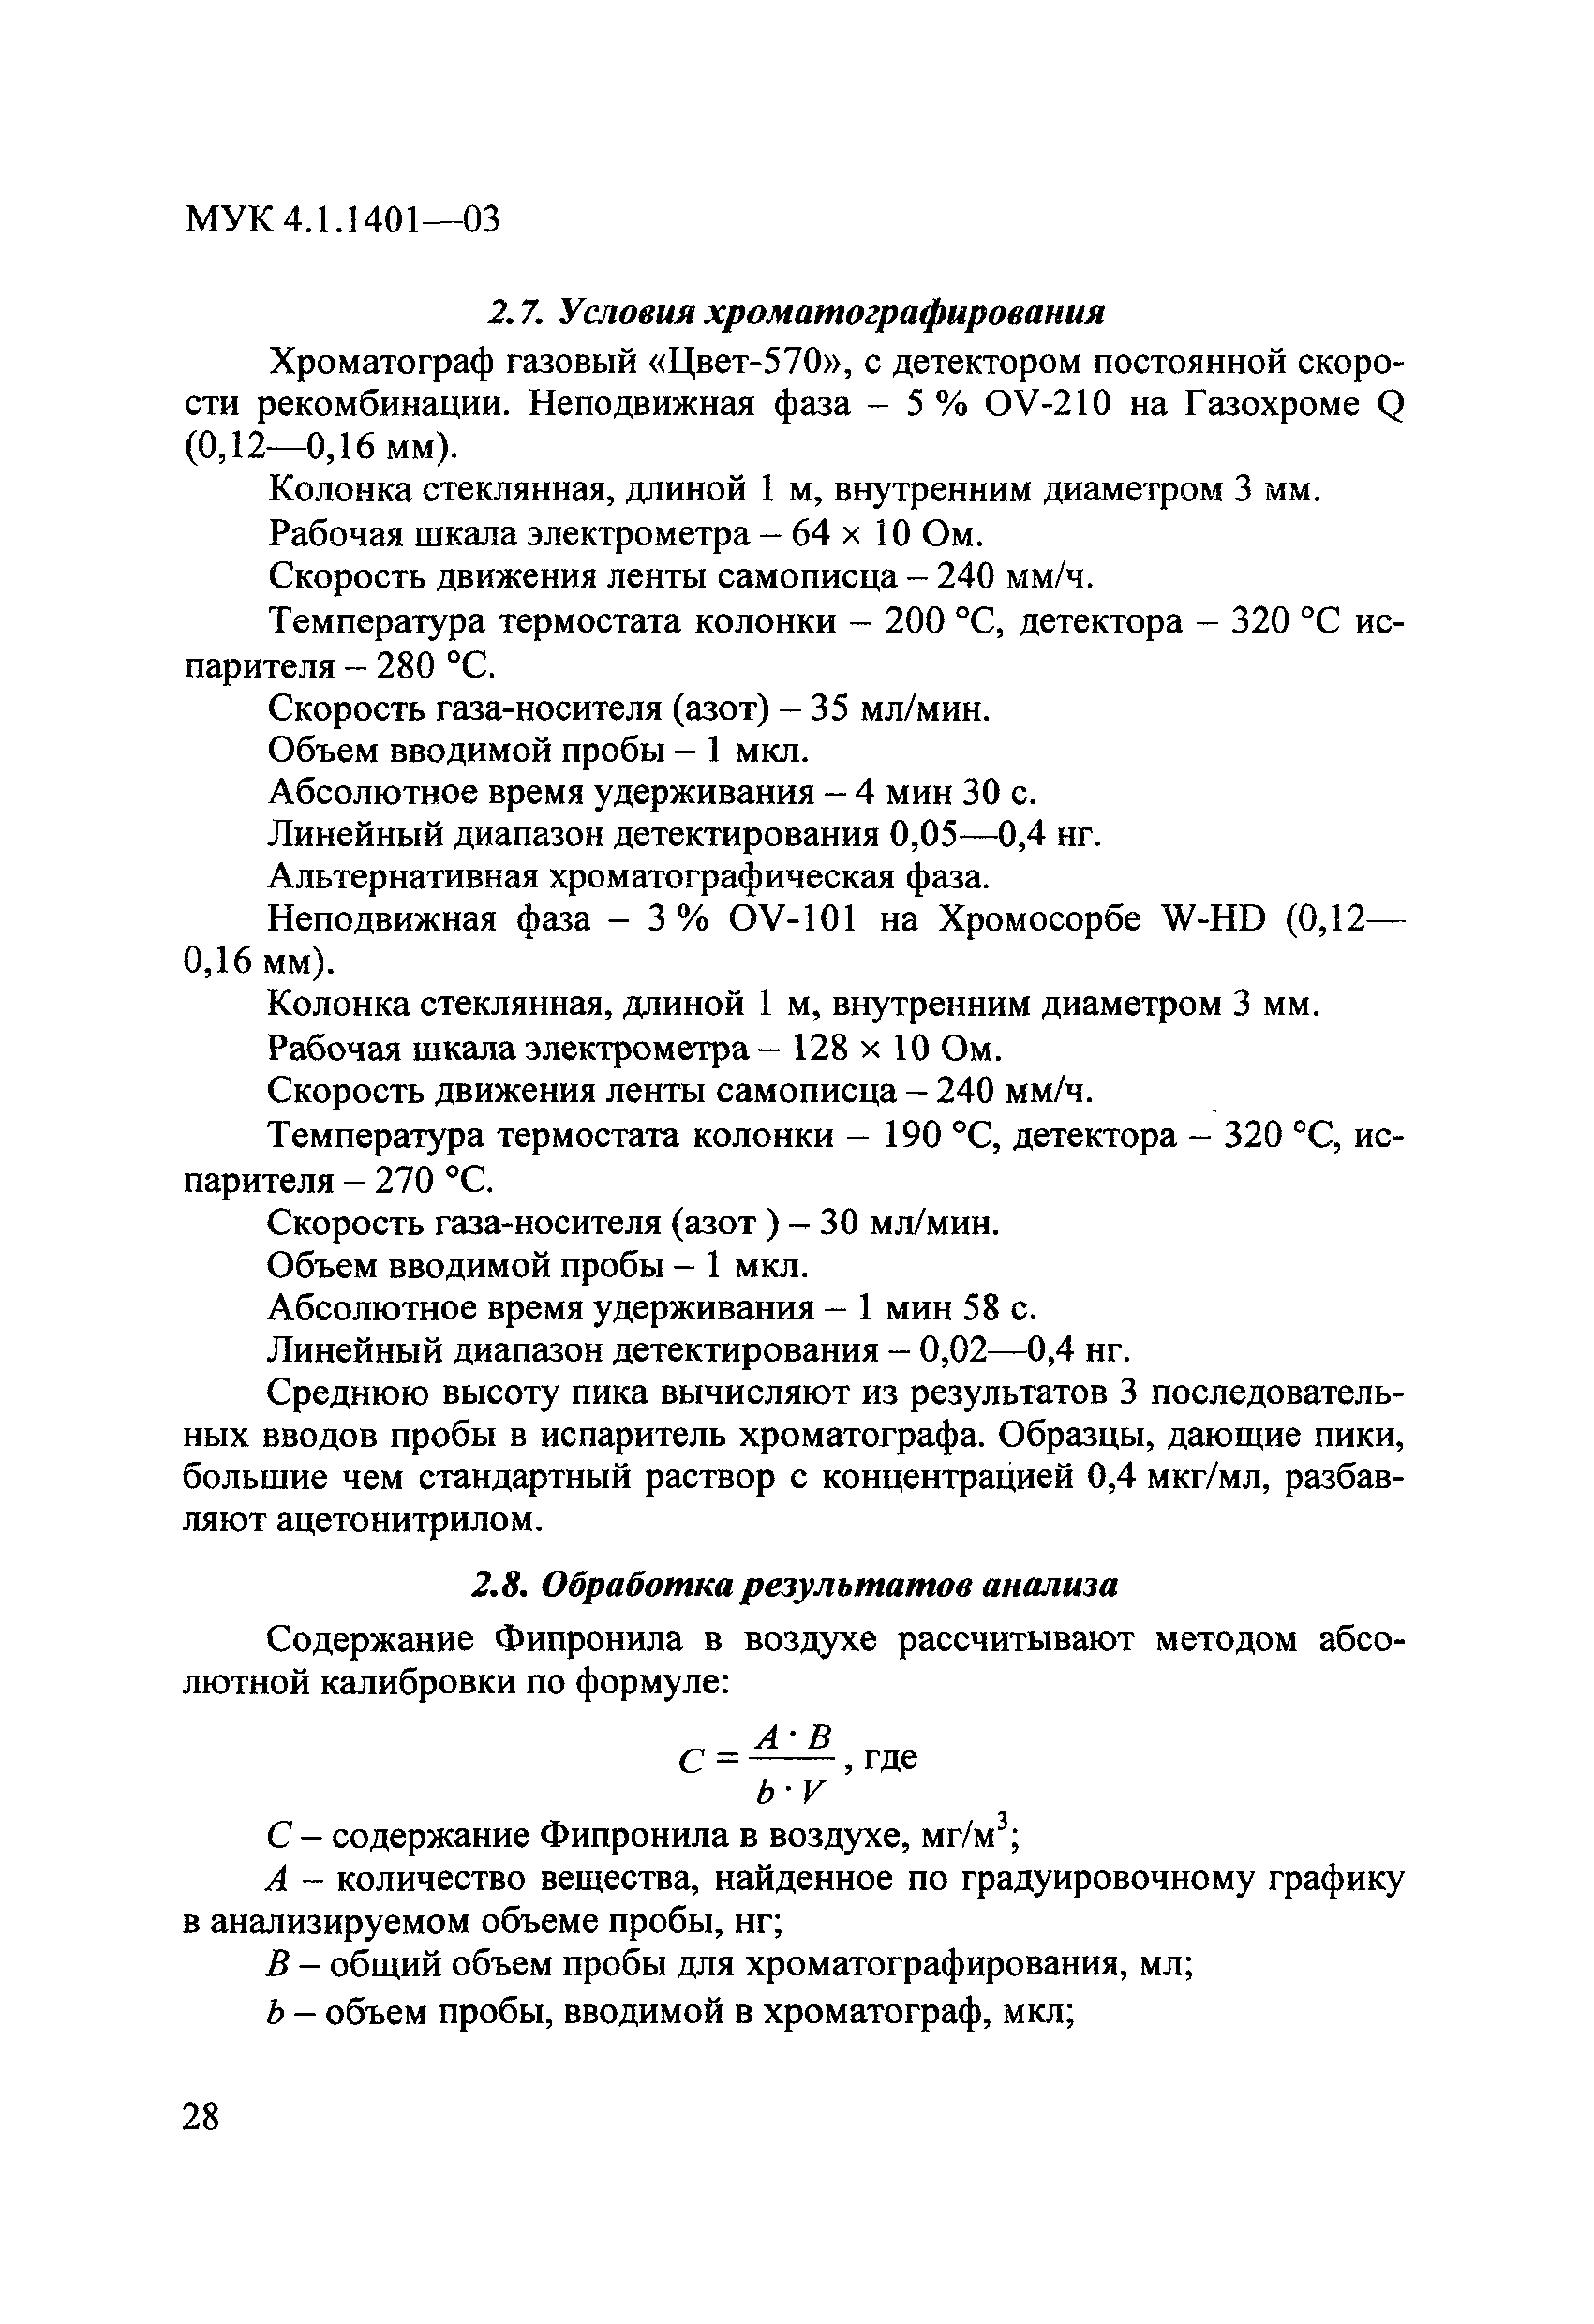 МУК 4.1.1401-03